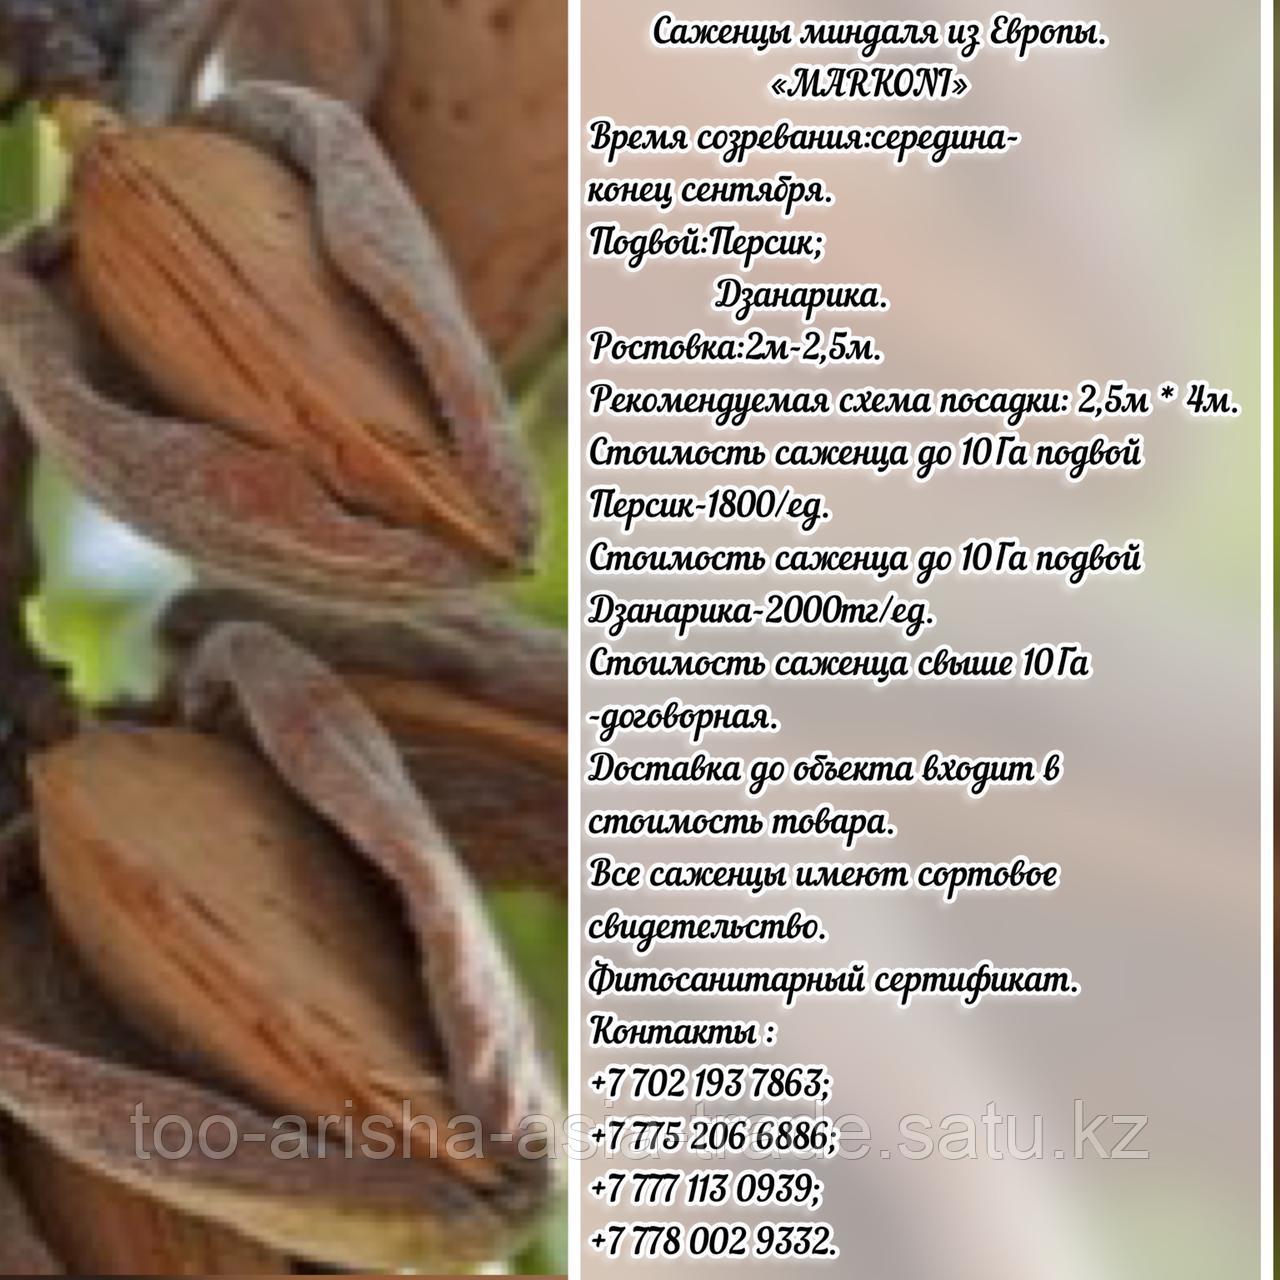 Саженцы миндаля "Marcona" (Маркона)  подвой персик Сербия